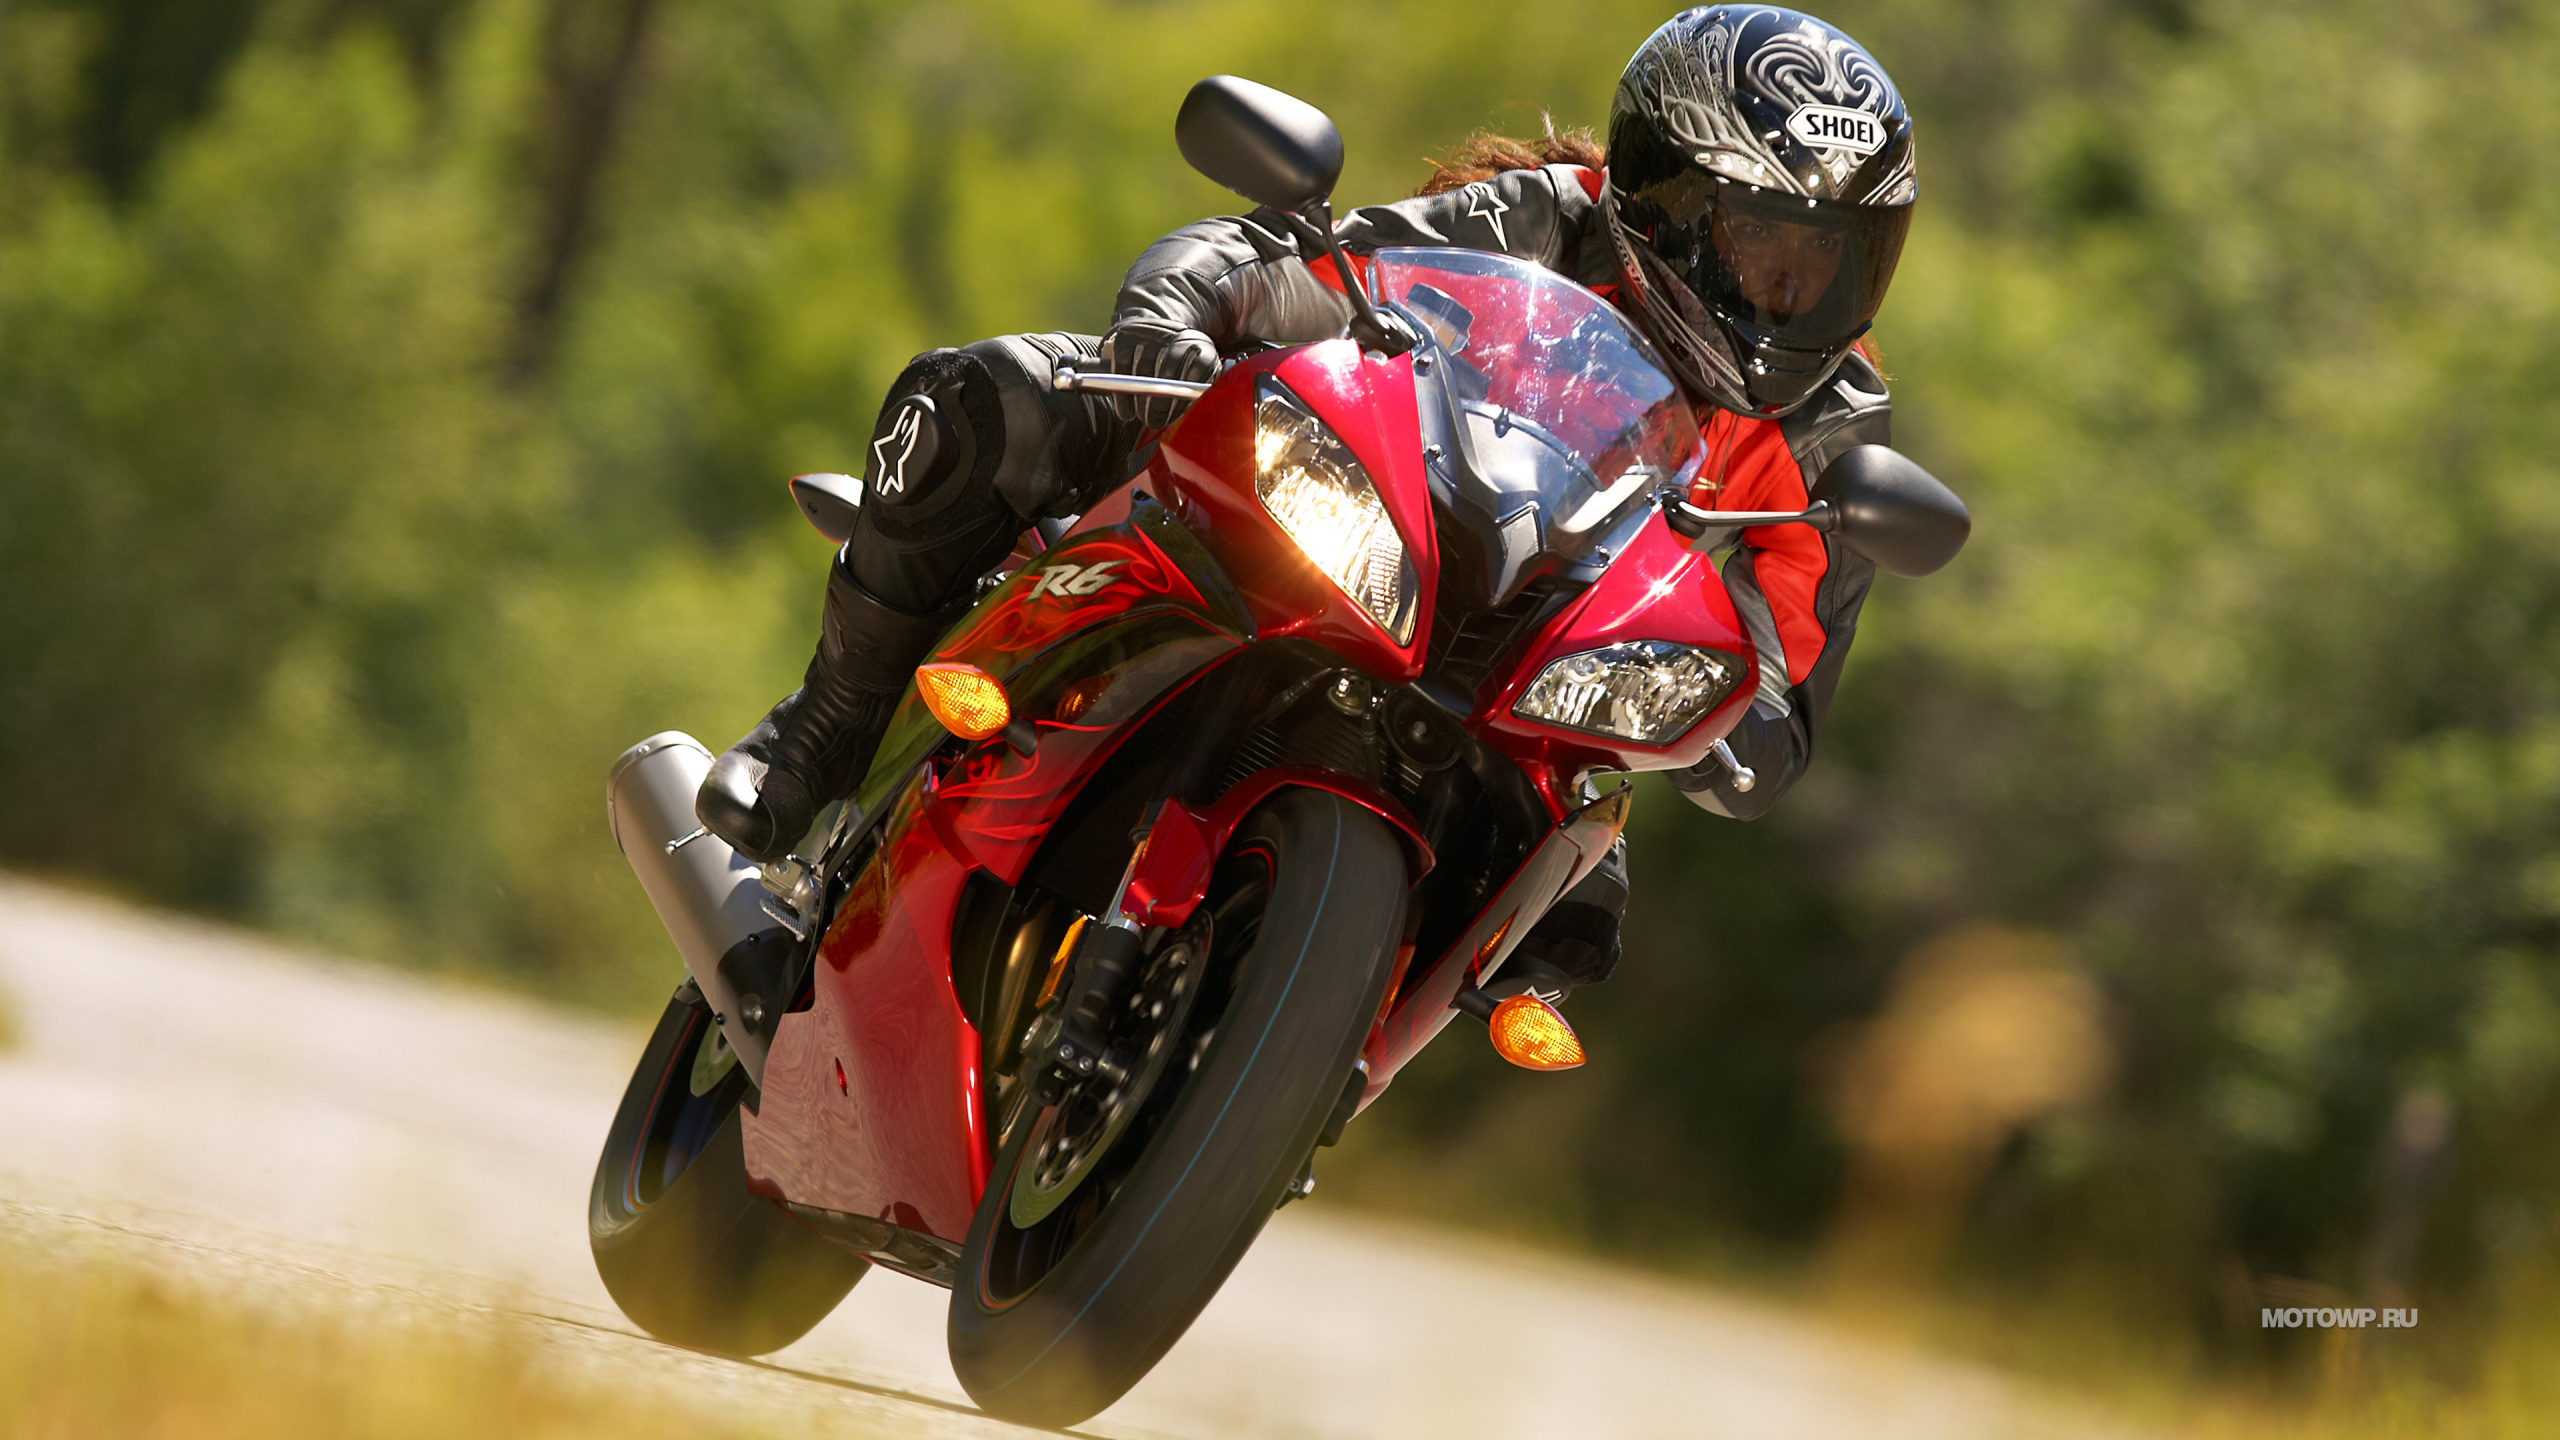 摩托车头盔, 超级赛车, 滑胎, 摩托车赛车, 骑摩托车特技 壁纸 2560x1440 允许